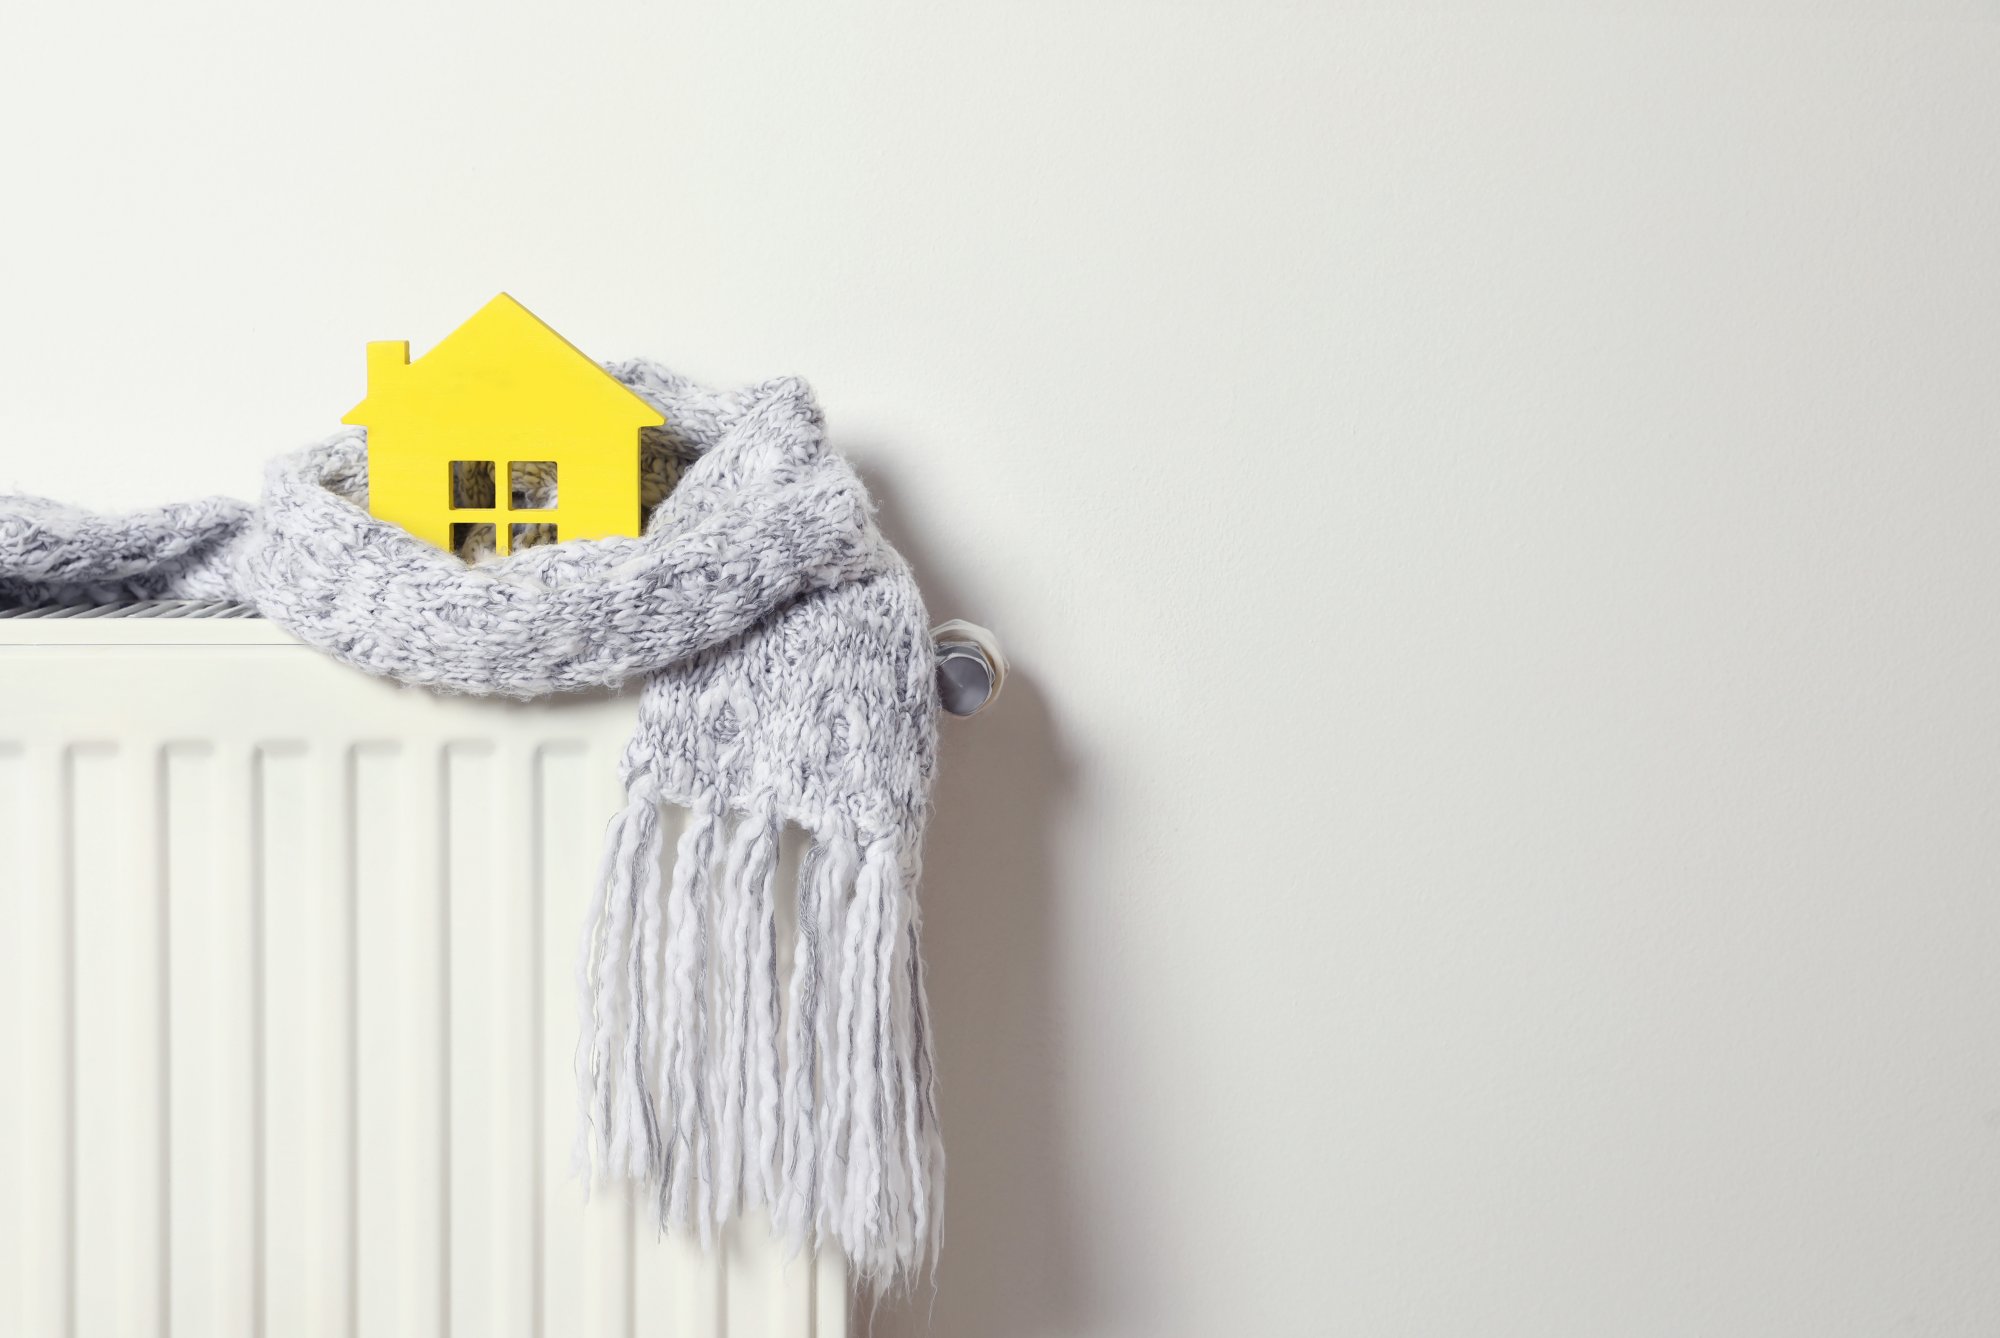 ΕΚΠΟΙΖΩ: Τα μισά νοικοκυριά αδυνατούν να έχουν τα σπίτια τους επαρκώς ζεστά